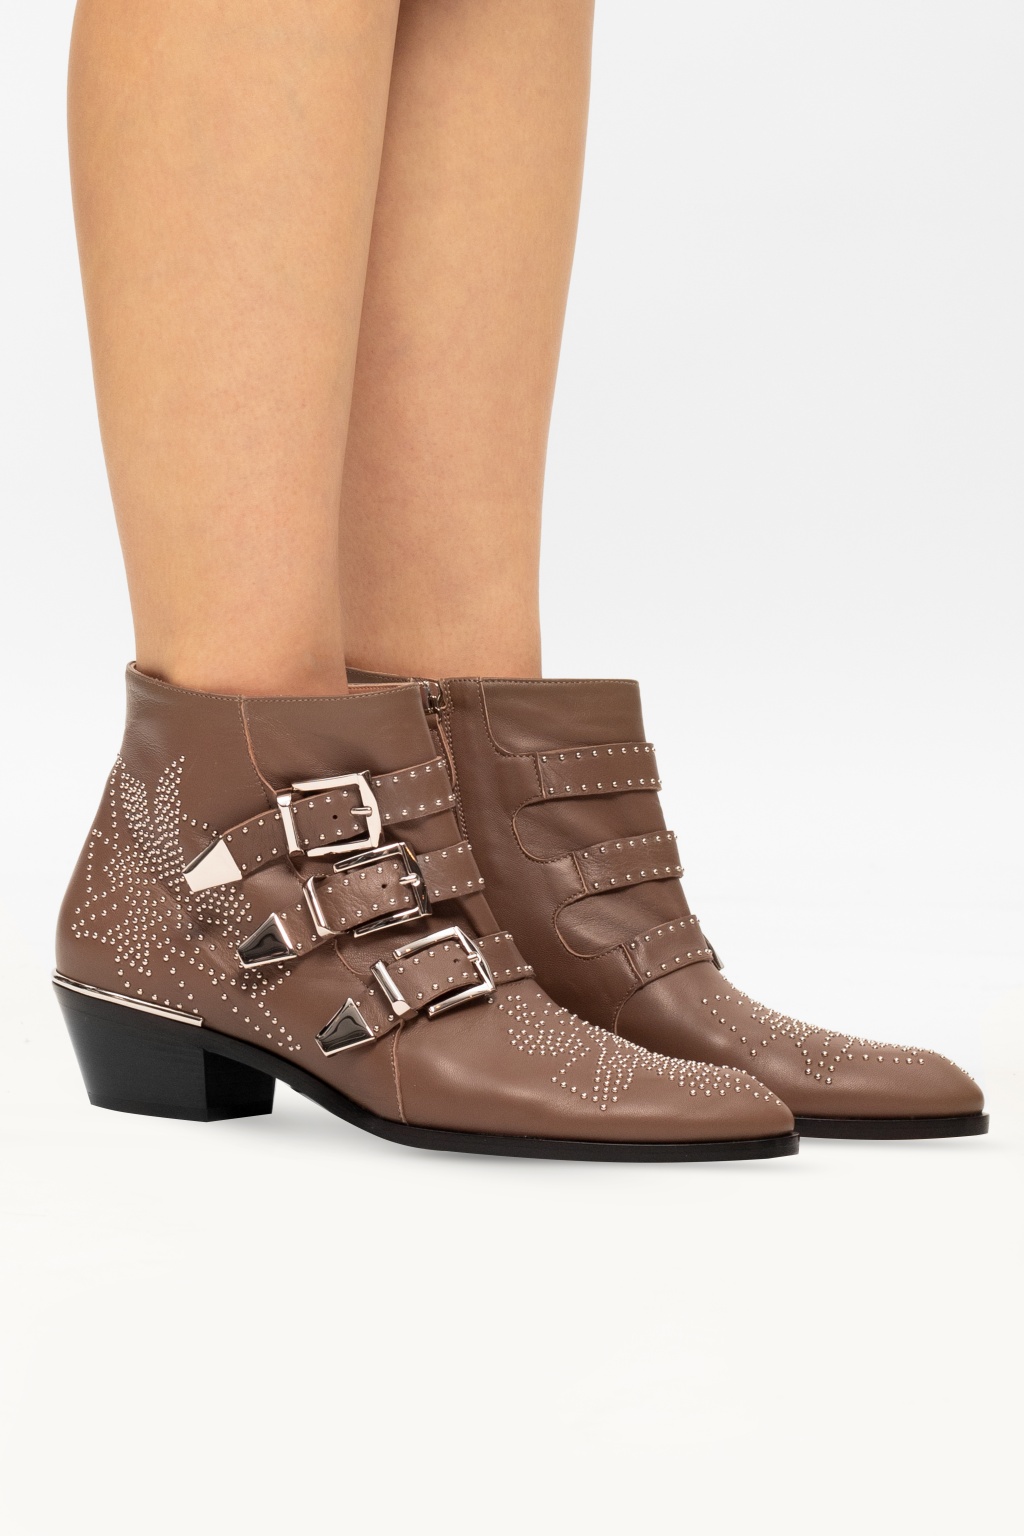 Women's Shoes | Chloé 'Susanna' leather ankle boots | IetpShops 